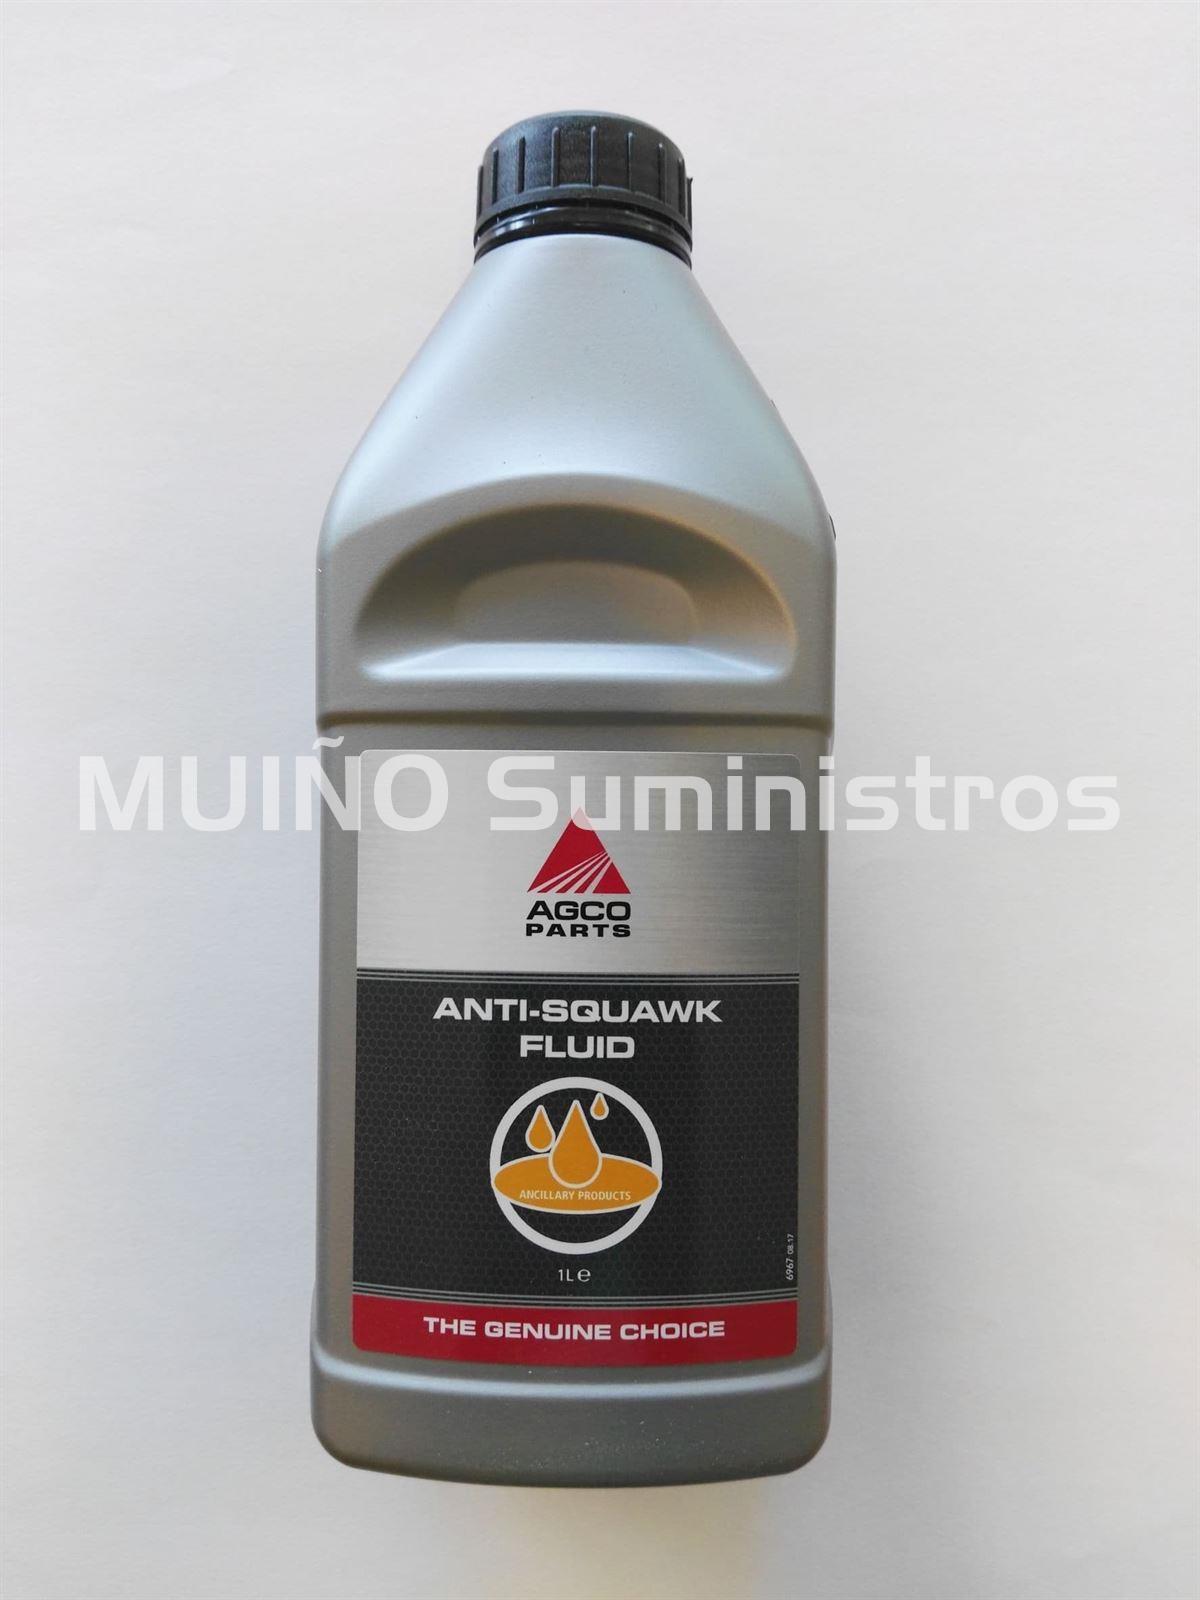 Anti-squawk fluid AGCO - Imagen 1